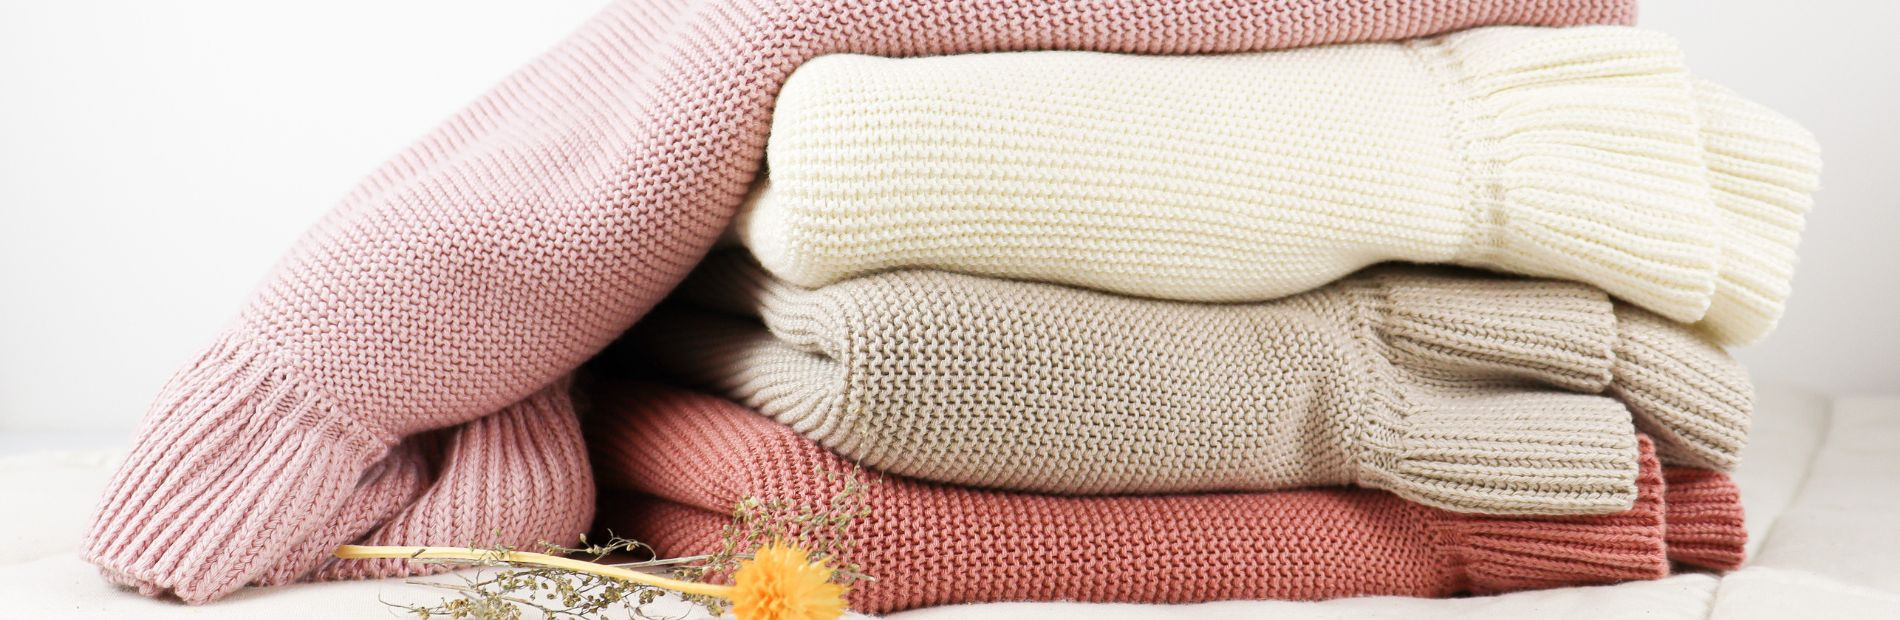 Cobertor algodão